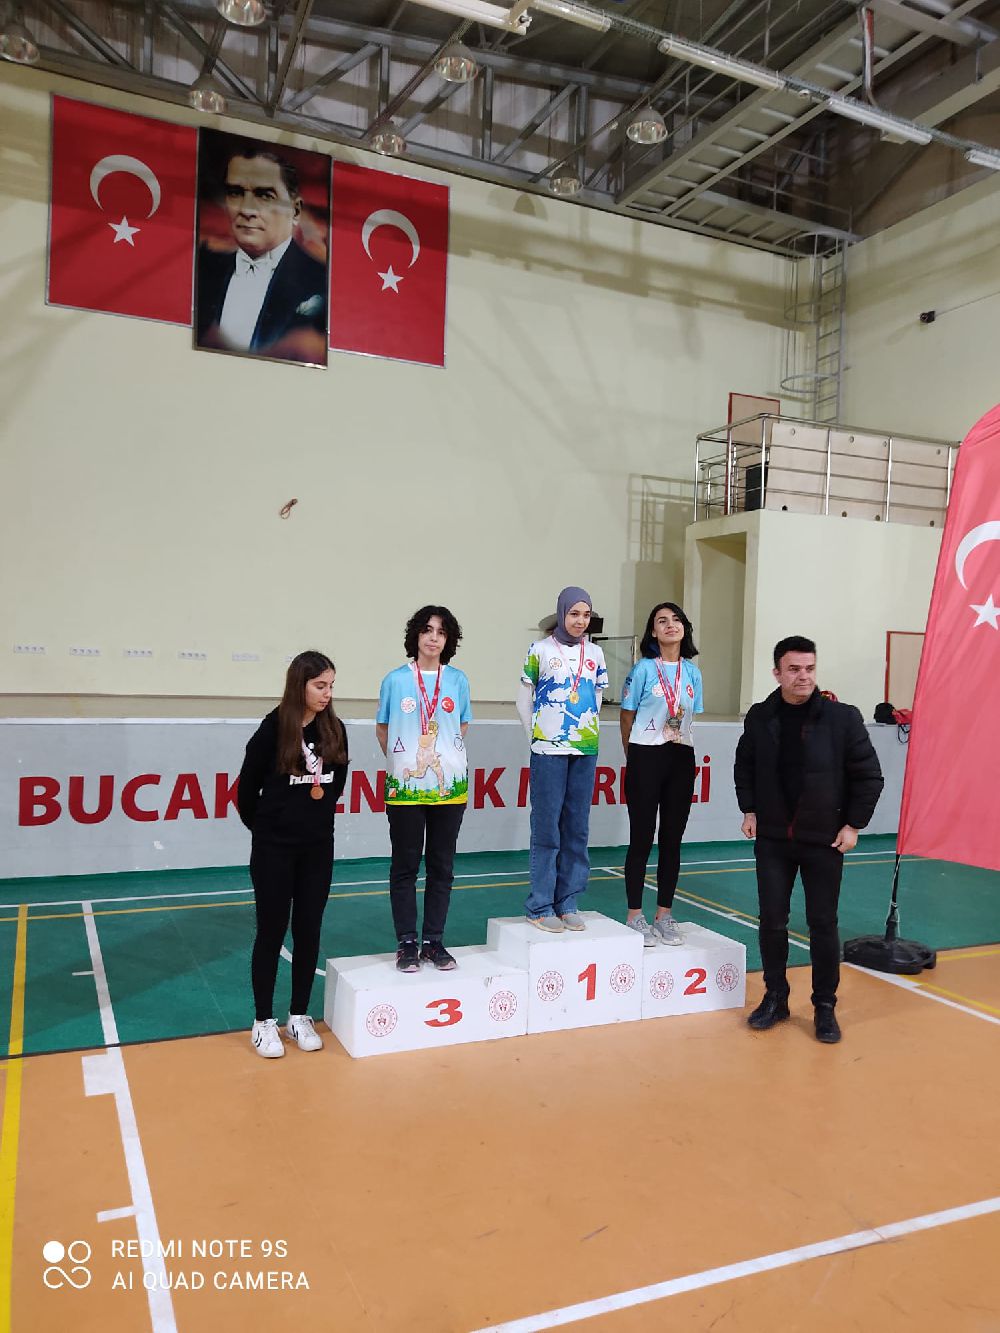 Burdur'da birincilikleri getirdiler; Bucak'ın gururu oldular